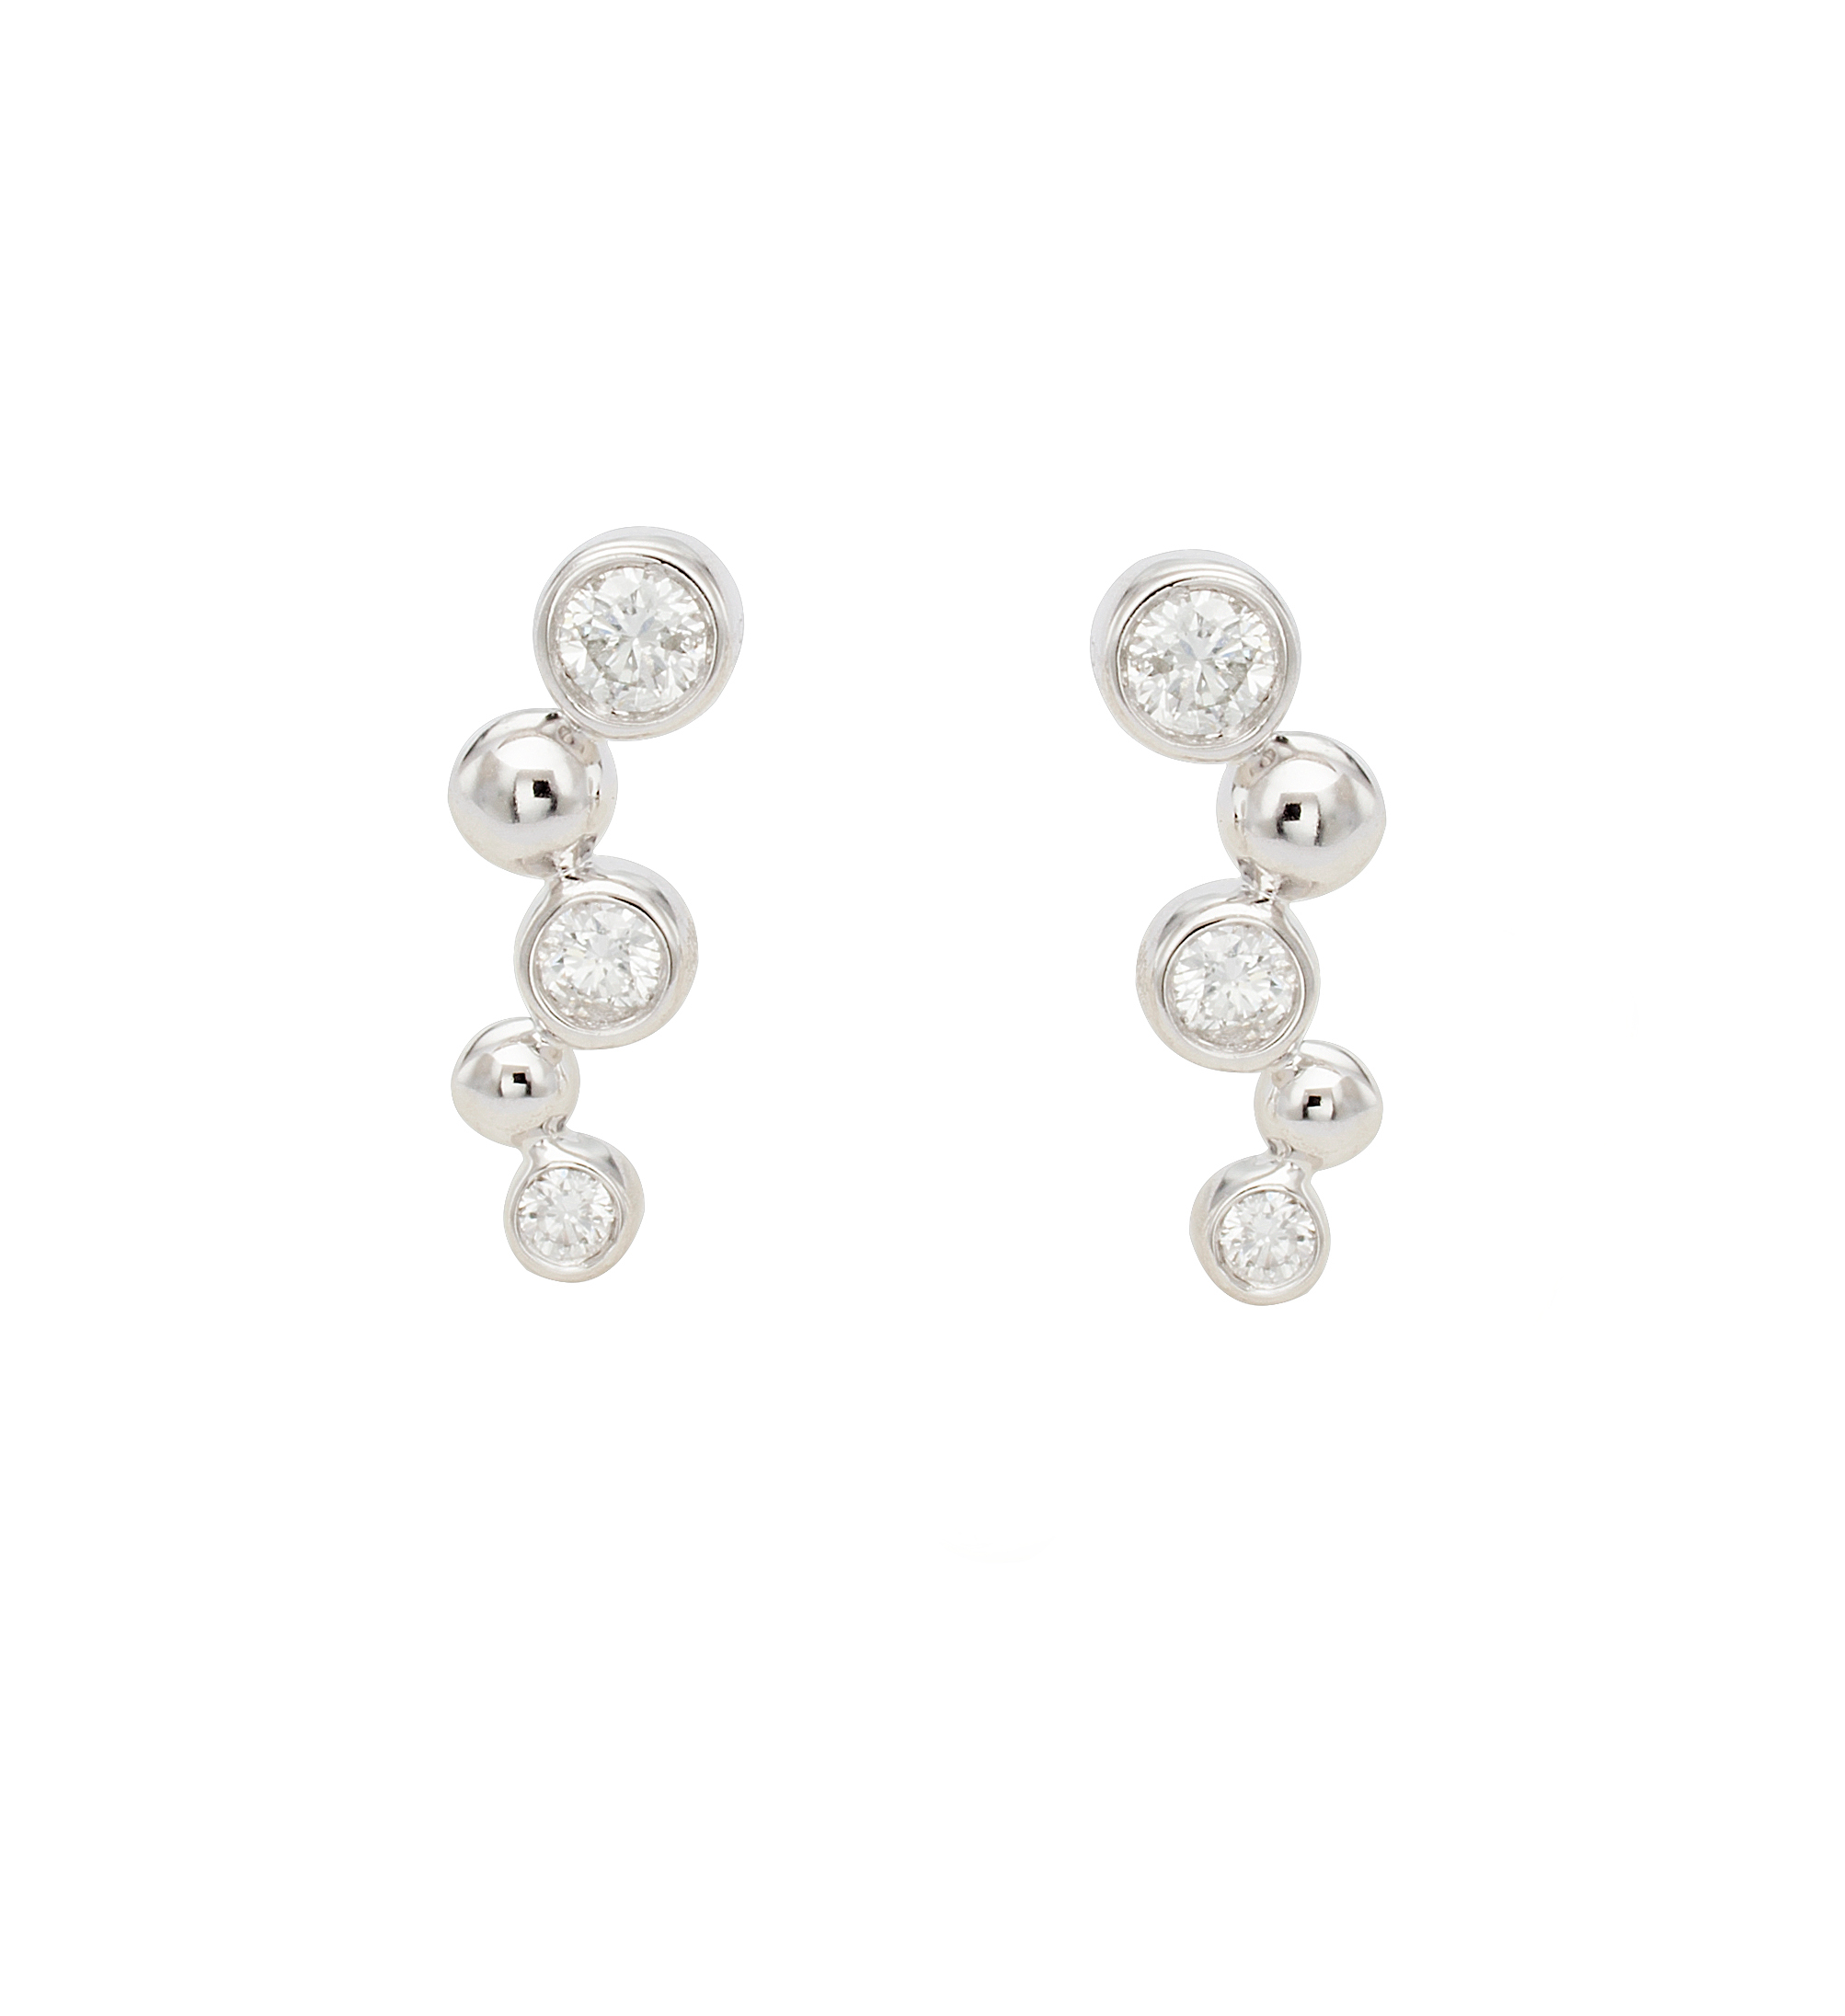 Boucles d'oreilles montantes en or blanc et diamants. Bijou fabriqué en France et est un cadeau tendance rock pour femmes.